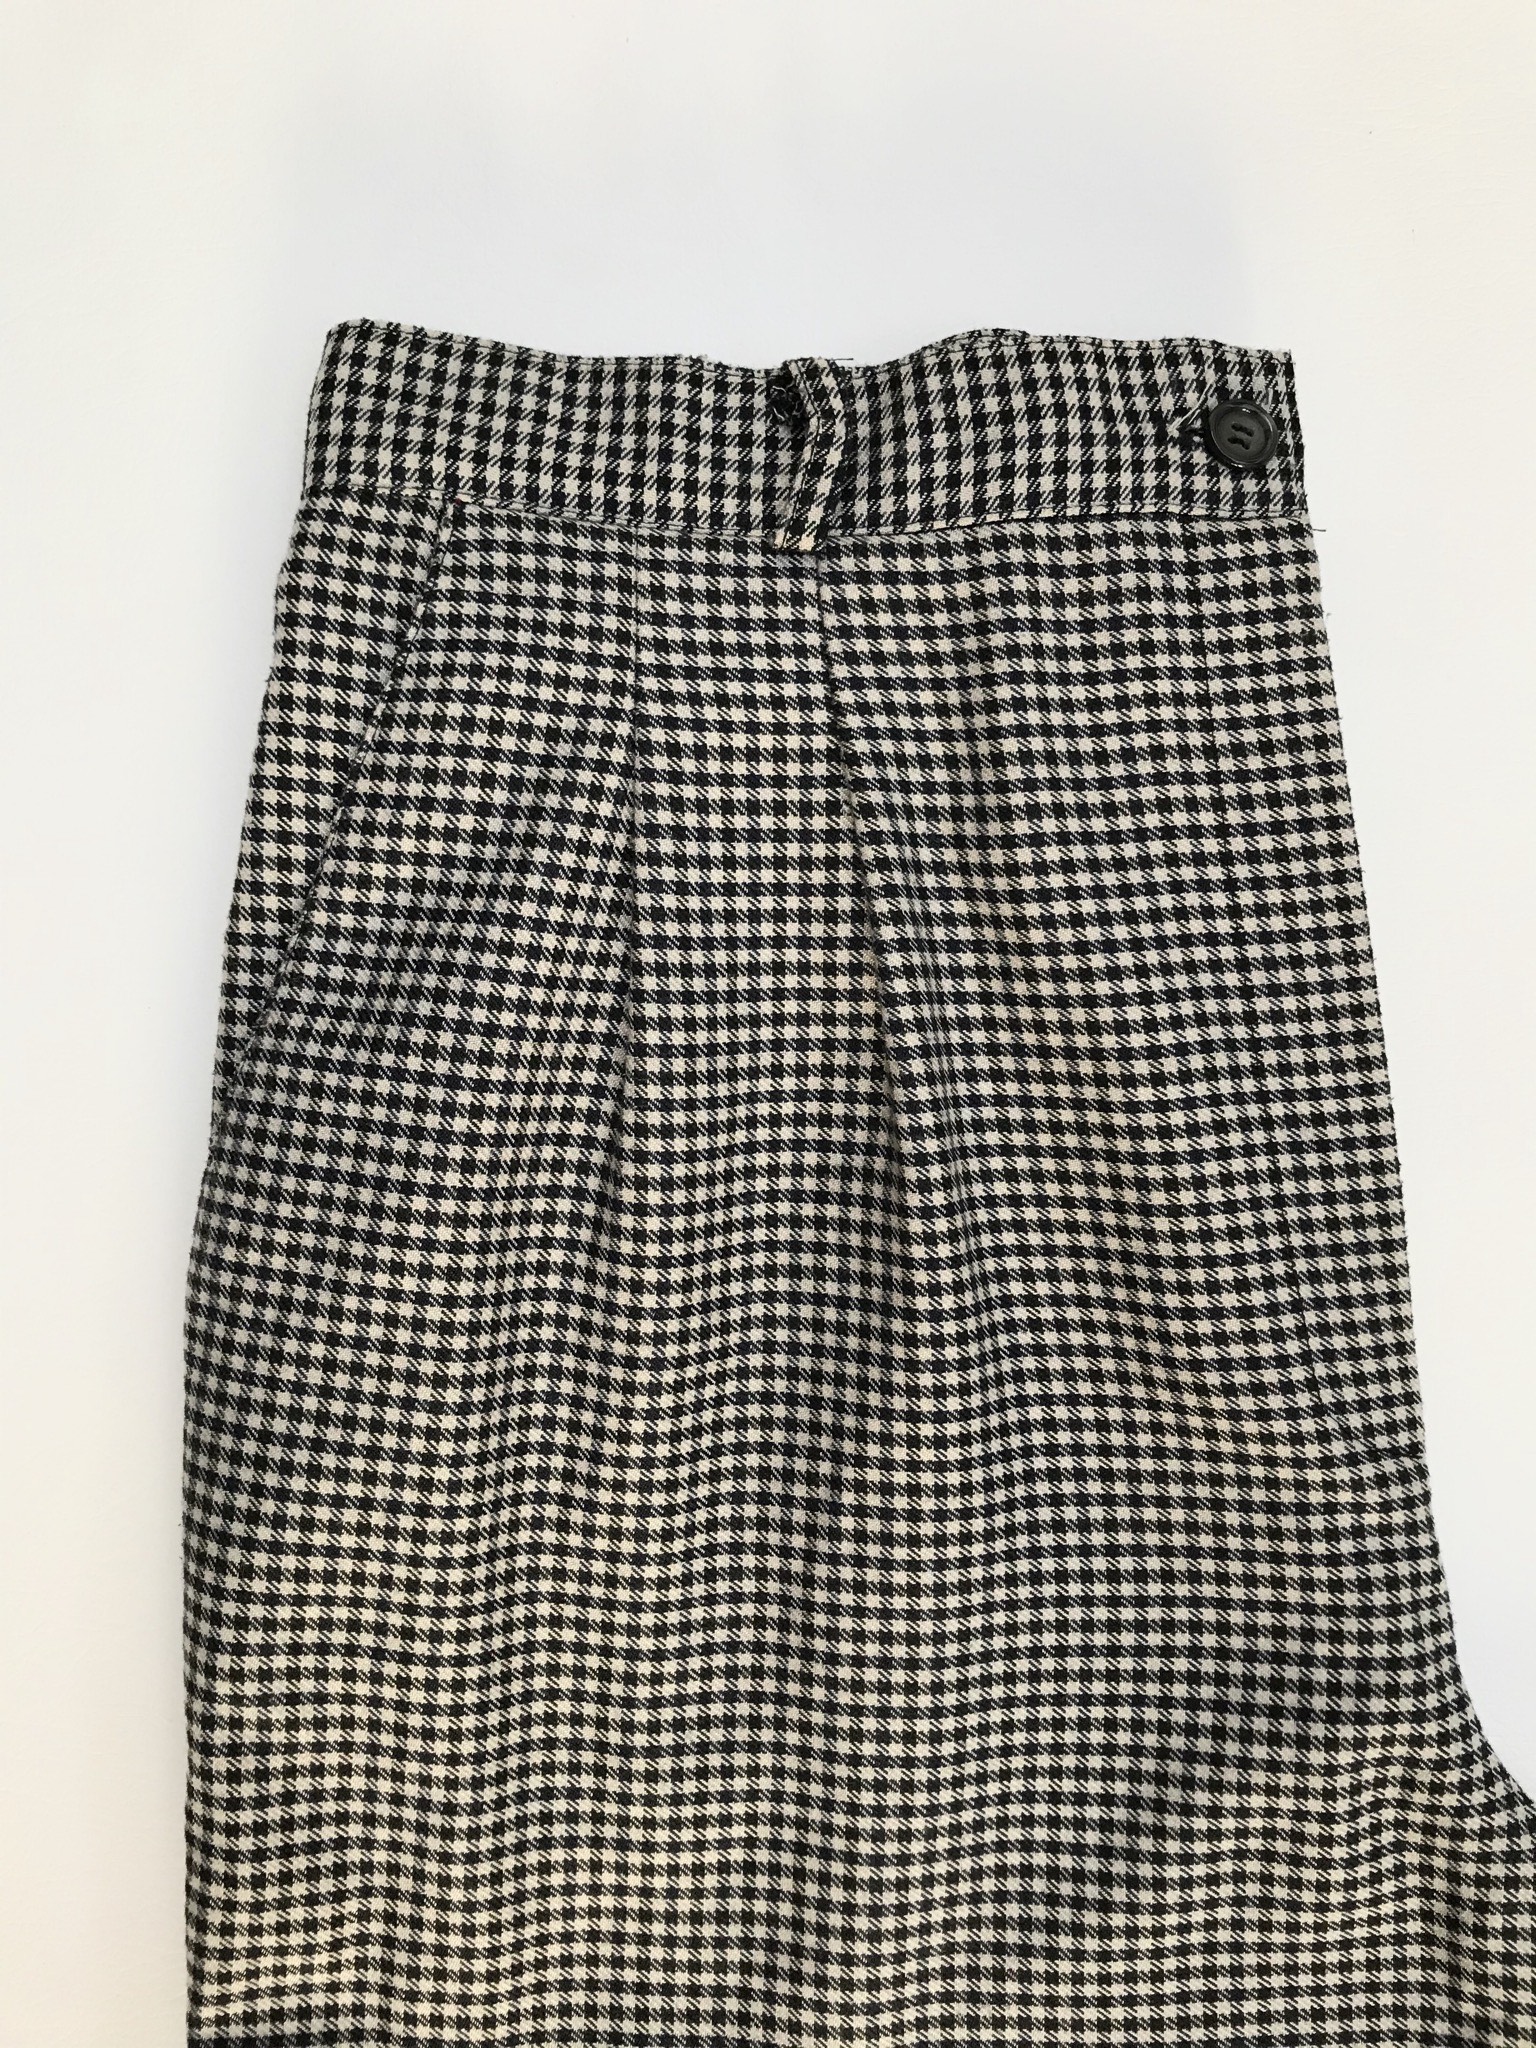 Pantalón vintage estampado pata de gallo negro y beige, a la cintura, corte recto con pinzas. 
Talla 32 (US10)